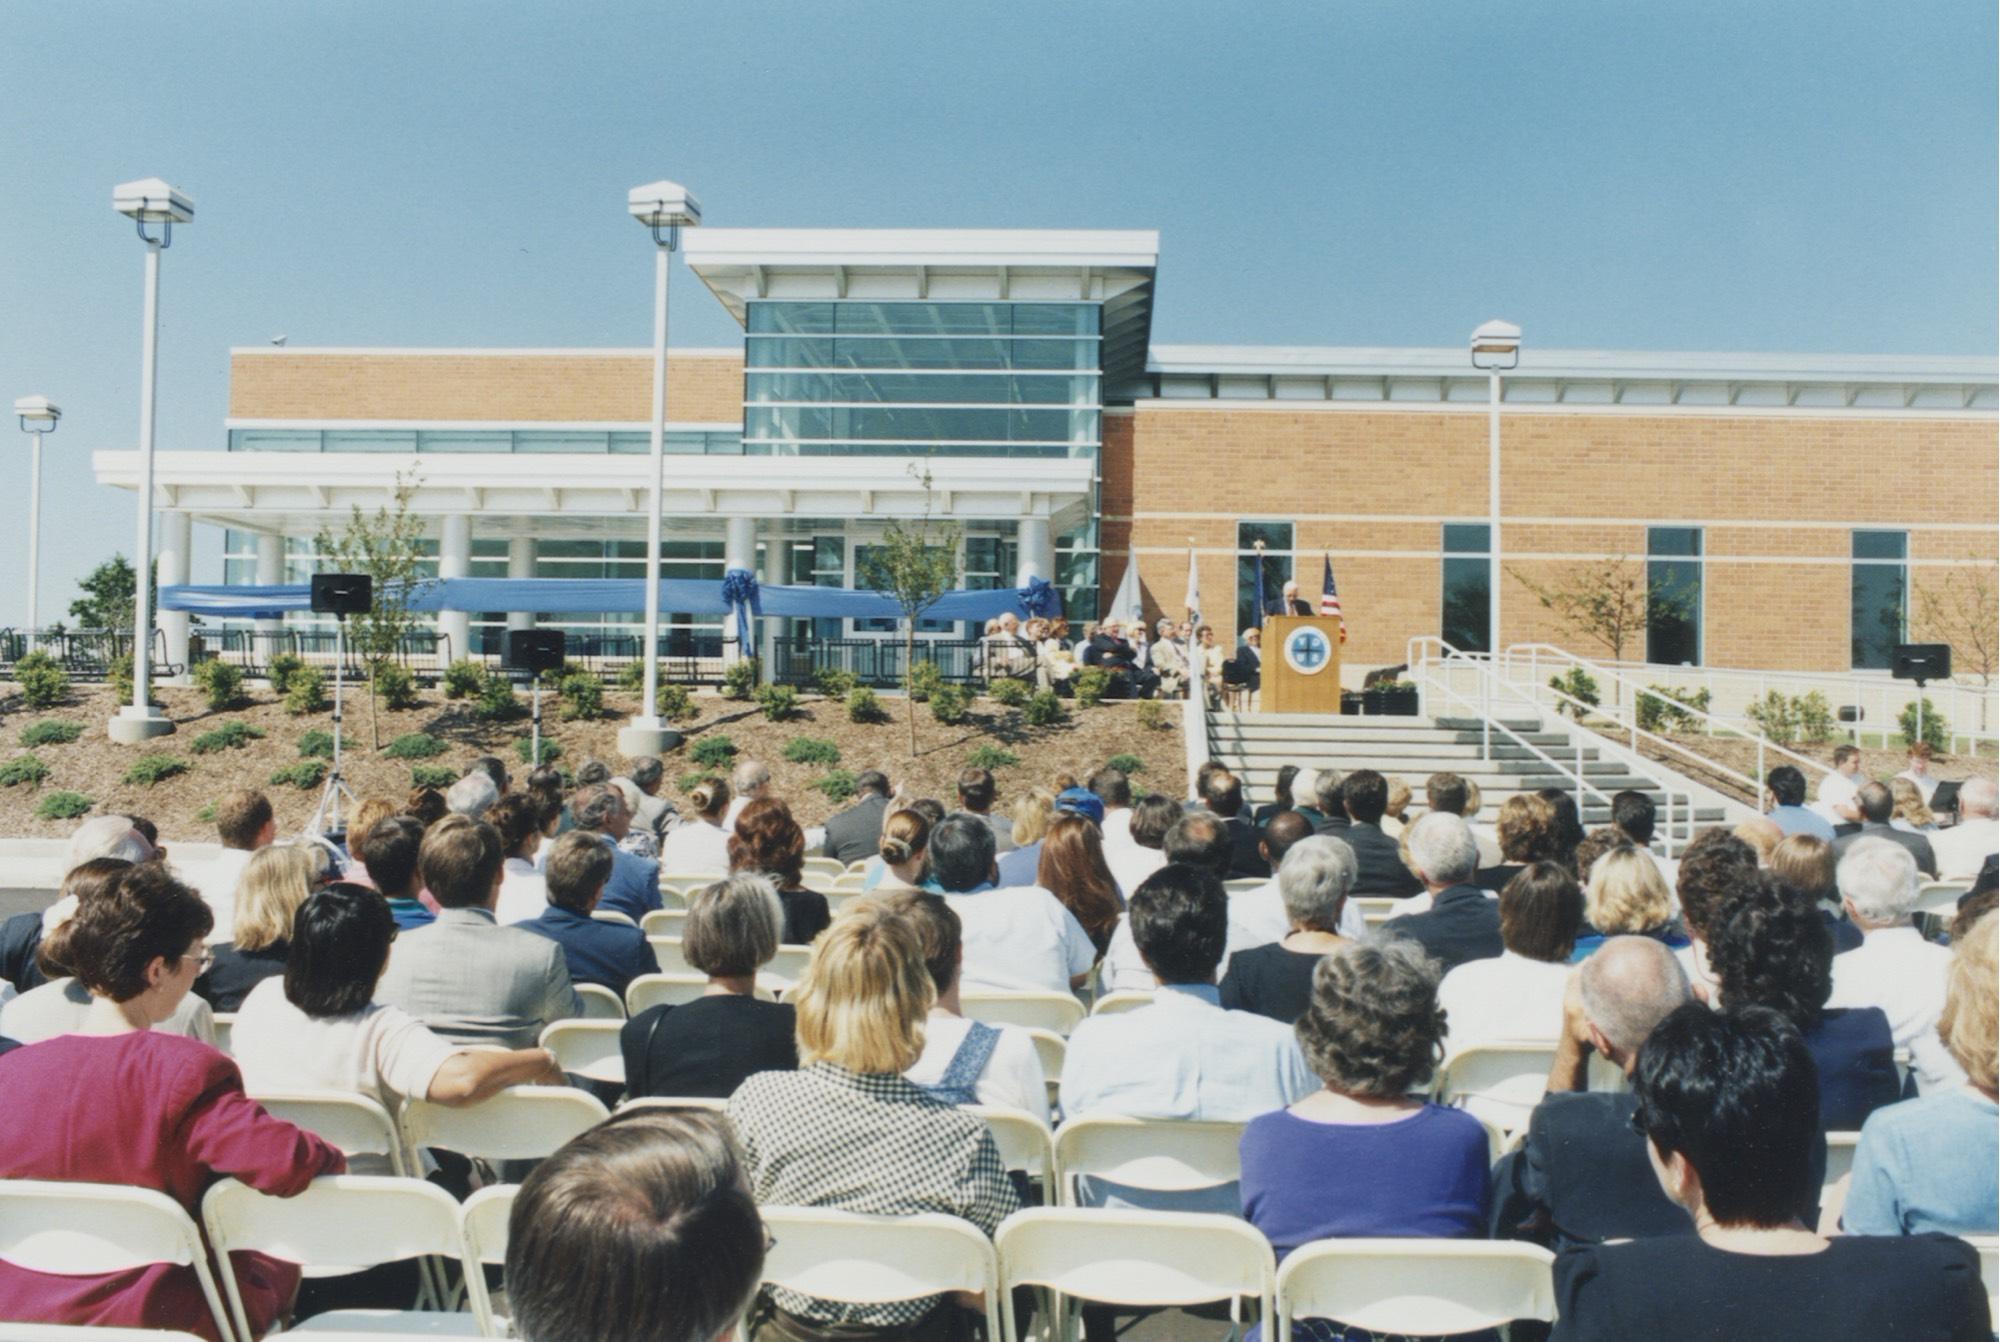 荷兰大河谷州立大学梅耶校区于1998年落成. 阿隆德·吕贝尔斯总统在颁奖典礼上发表讲话.